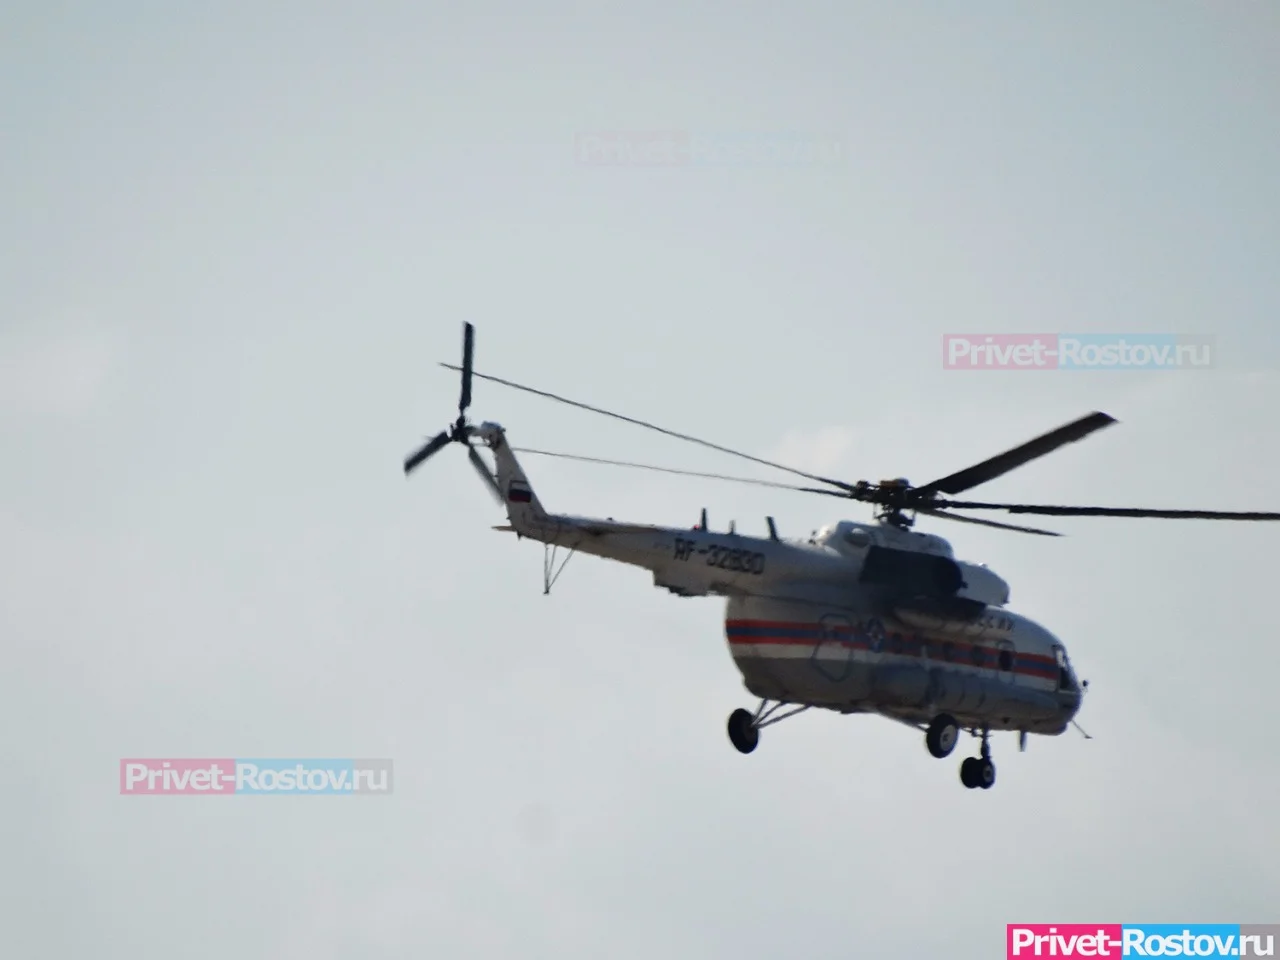 Ростовчане заявили, что вертолет задел и оборвал провода над трассой в Чалтыре